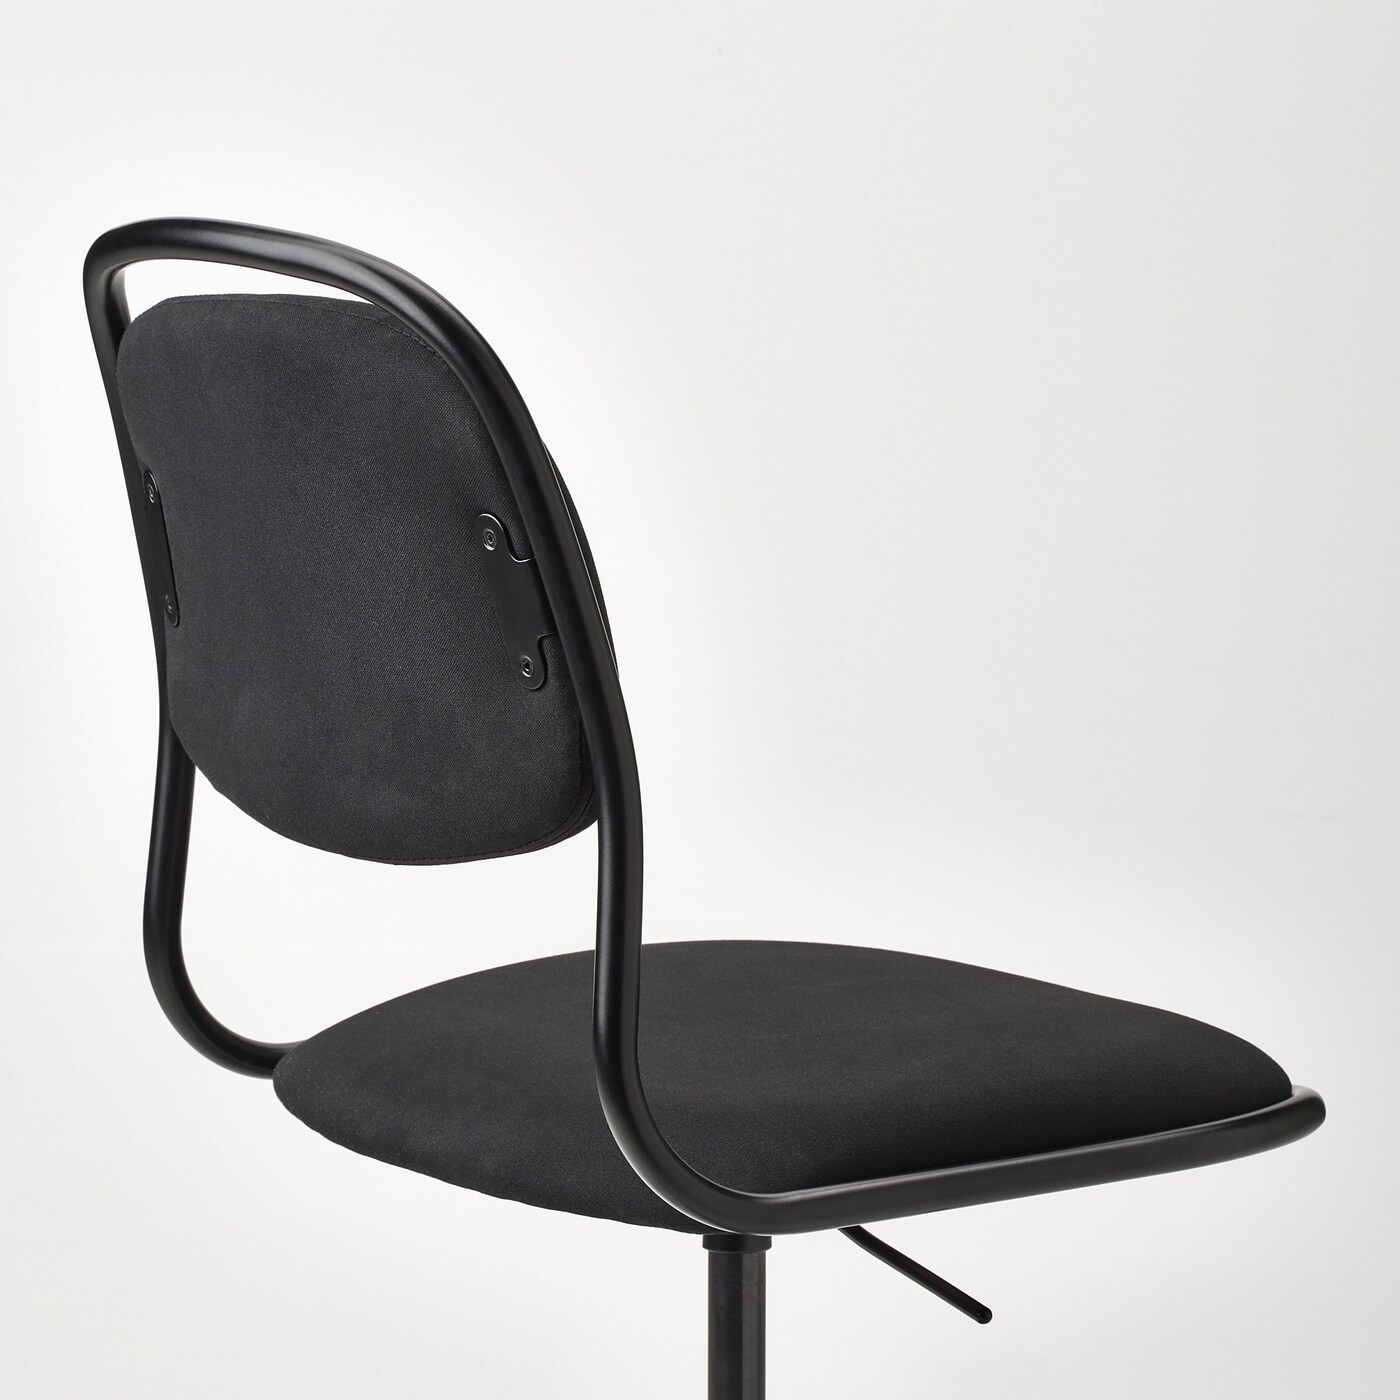 ÖRFJÄLL Swivel chair